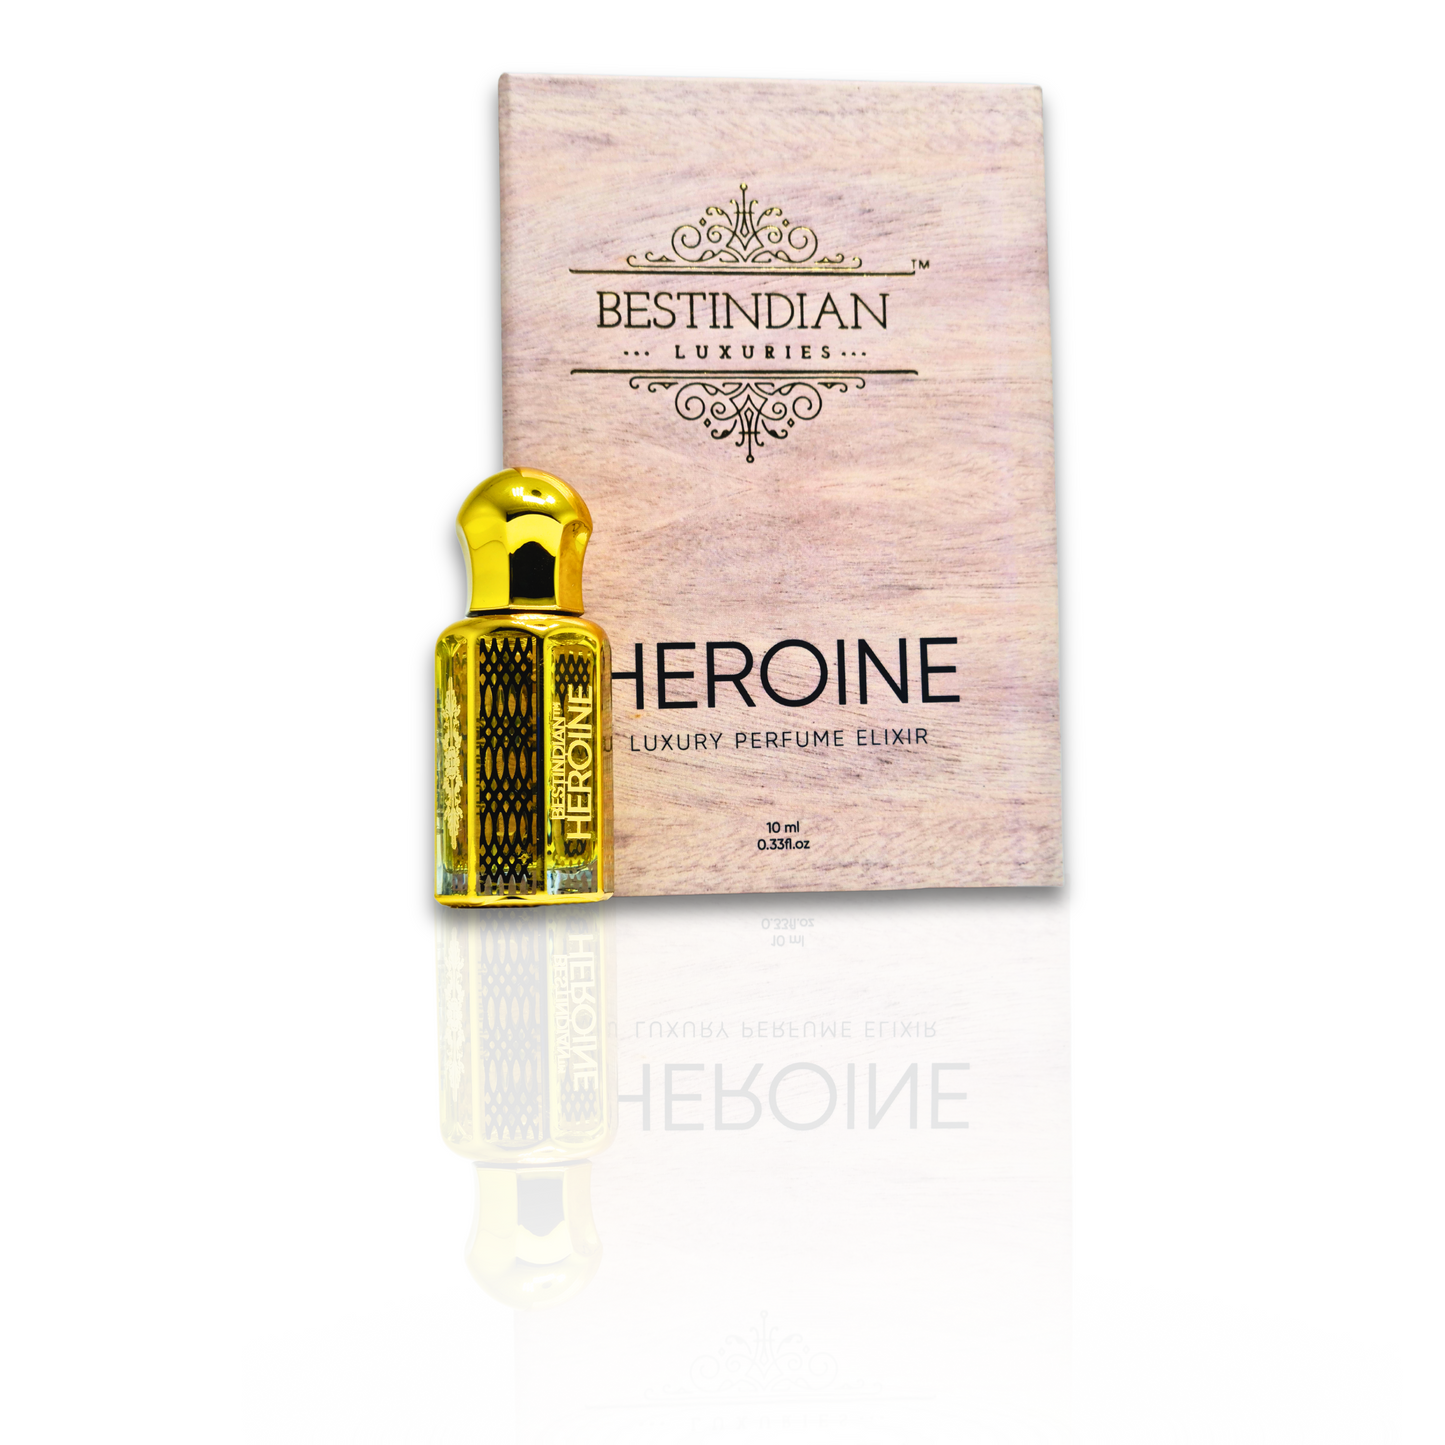 BestIndian Heroine Perfume Elixir